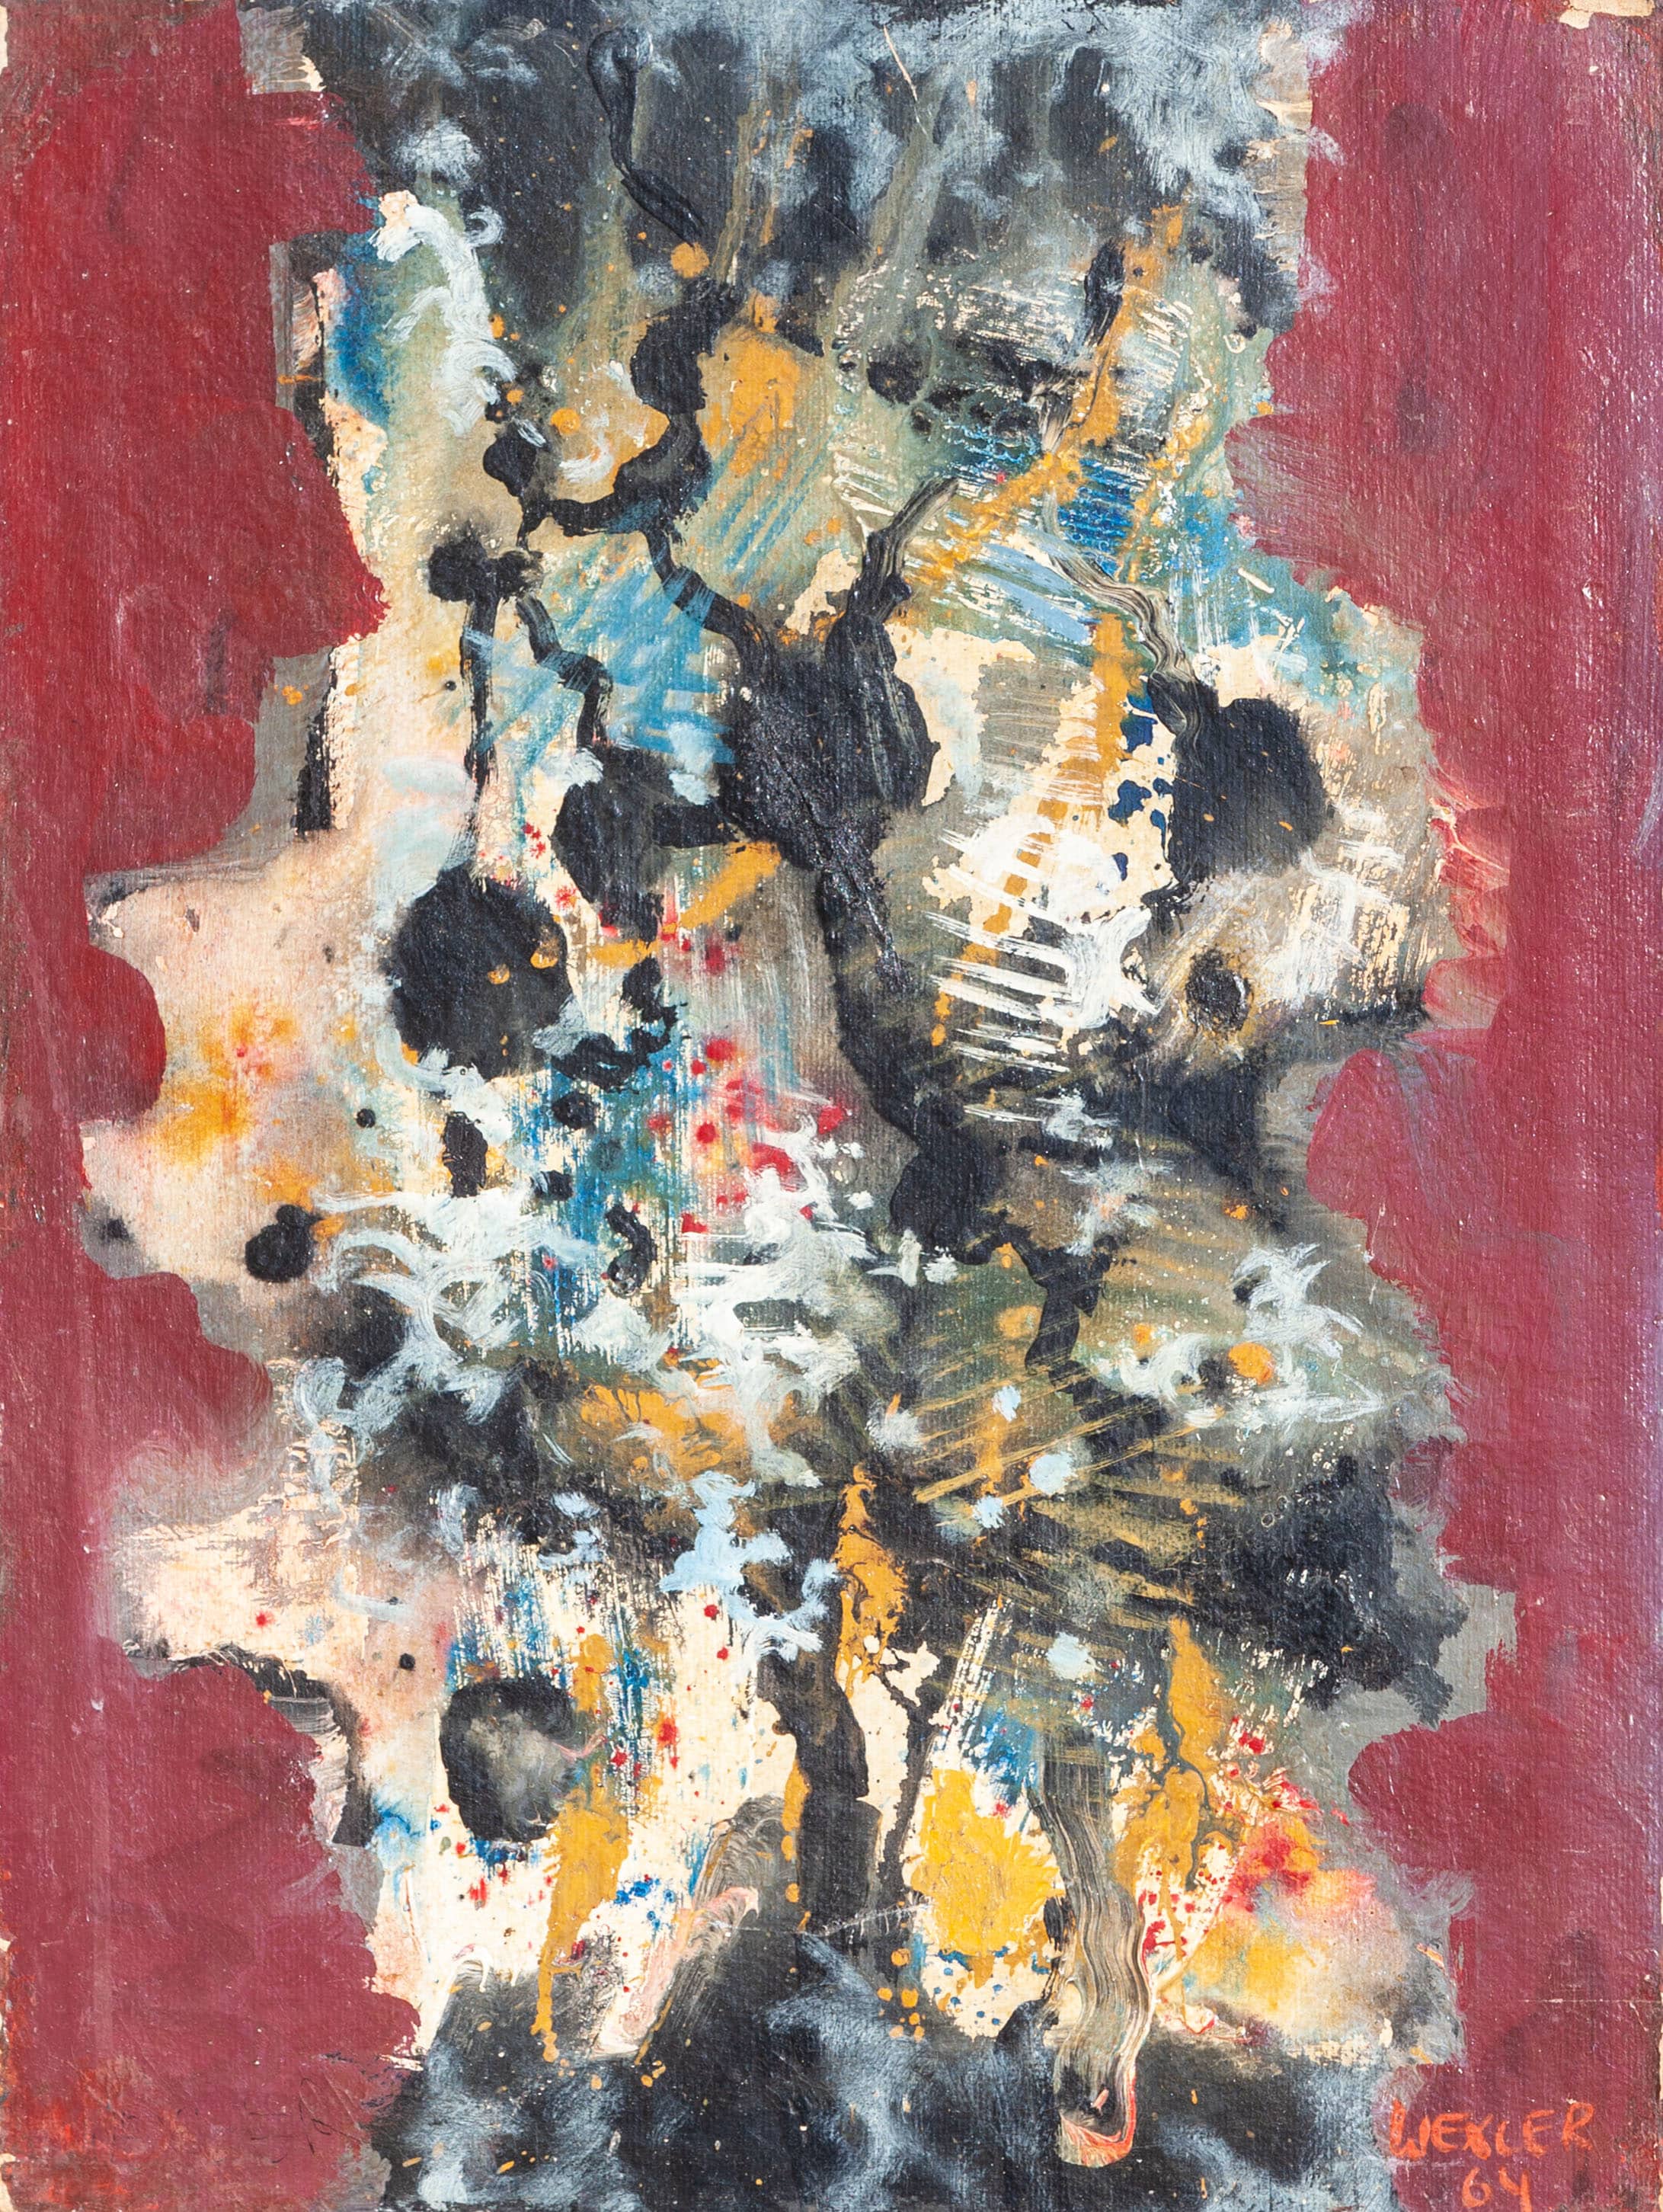 יעקב וכסלר, "ללא כותרת", 1964, שמן על מזוניט, 50x30 ס"מ